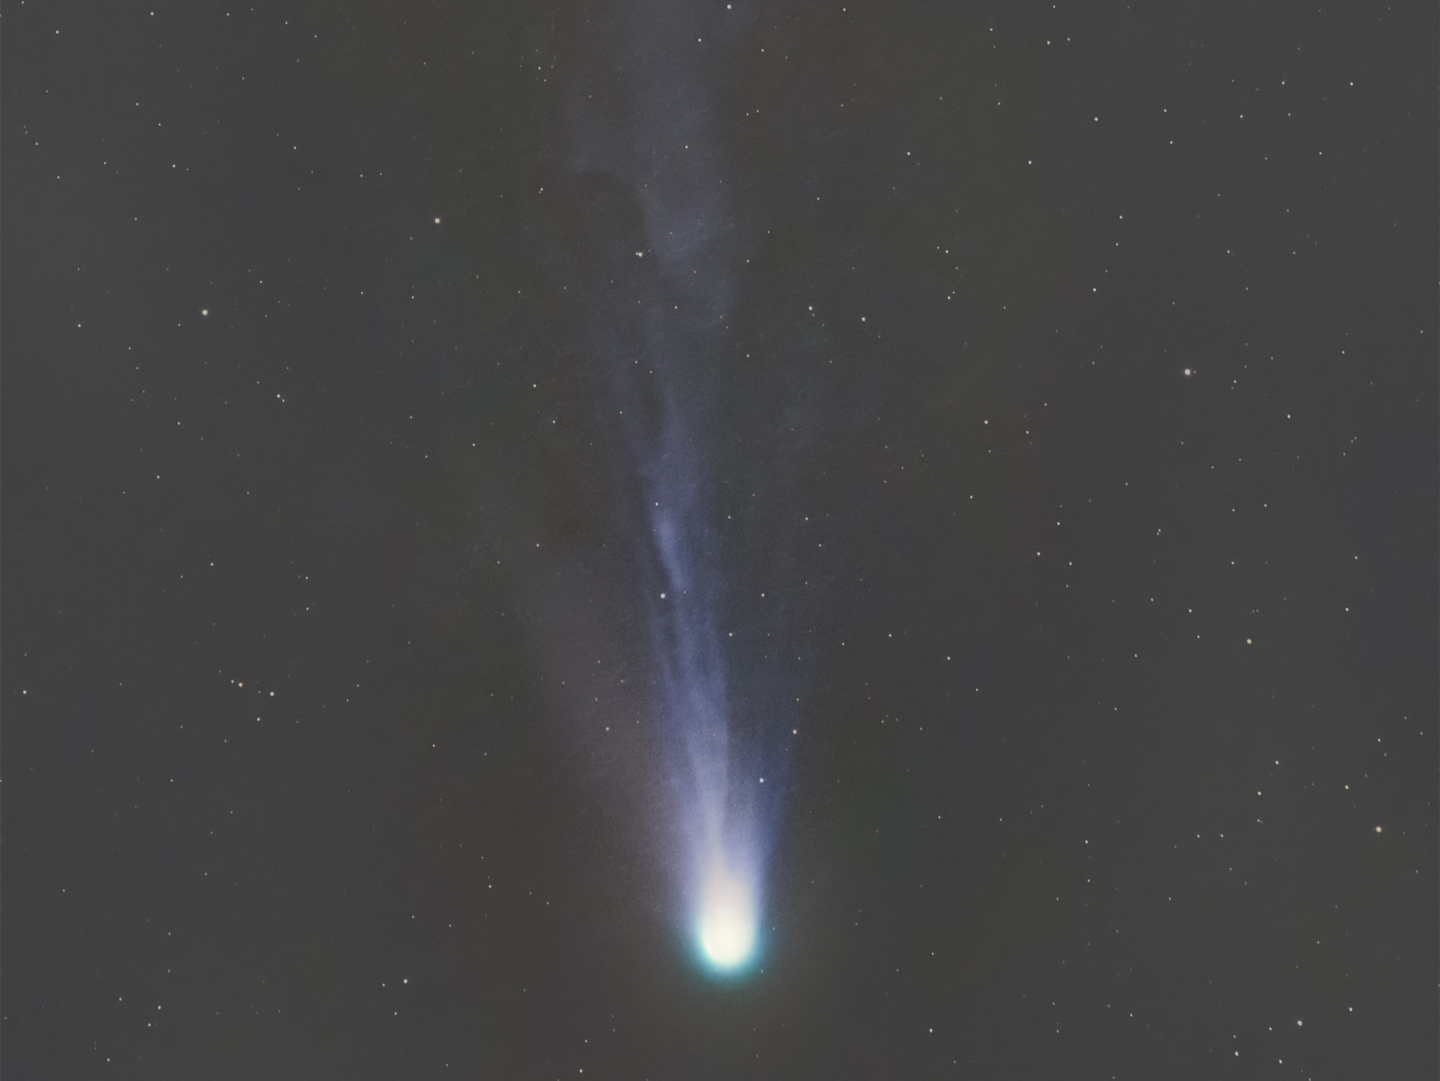 12P/庞士-布鲁克斯彗星即将迎来近日点，它是最亮的已知周期彗星之一，每71年回归一次，对于芸芸众生的我们大多数人来说，有生之年大概只能跟它相遇一次